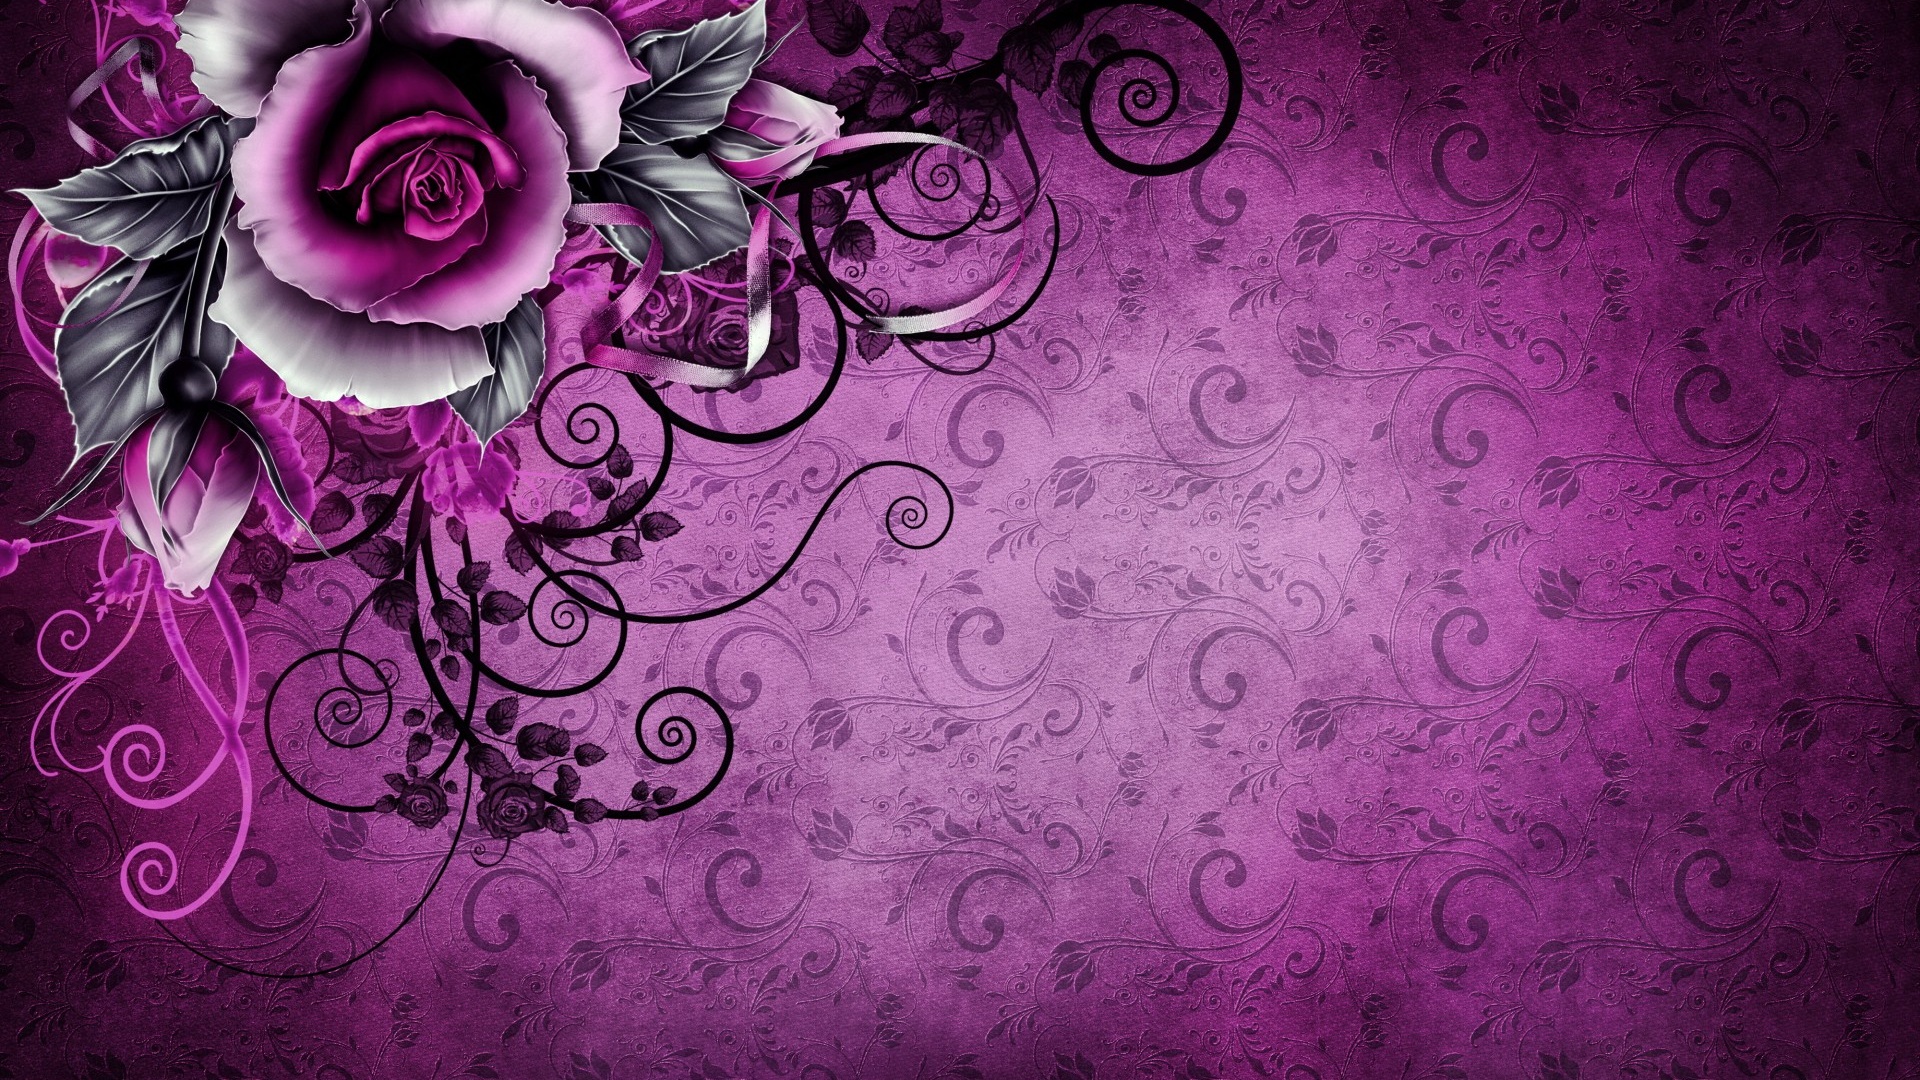 Hoa hồng tím cổ điển là biểu tượng tình yêu vĩnh cửu. Chúng tôi đã tạo ra những bức tranh tuyệt đẹp về hoa hồng tím cổ điển, để bạn có thể trang trí cho ngôi nhà của mình một cách đẹp nhất. Khám phá ngay tại trang web của chúng tôi!